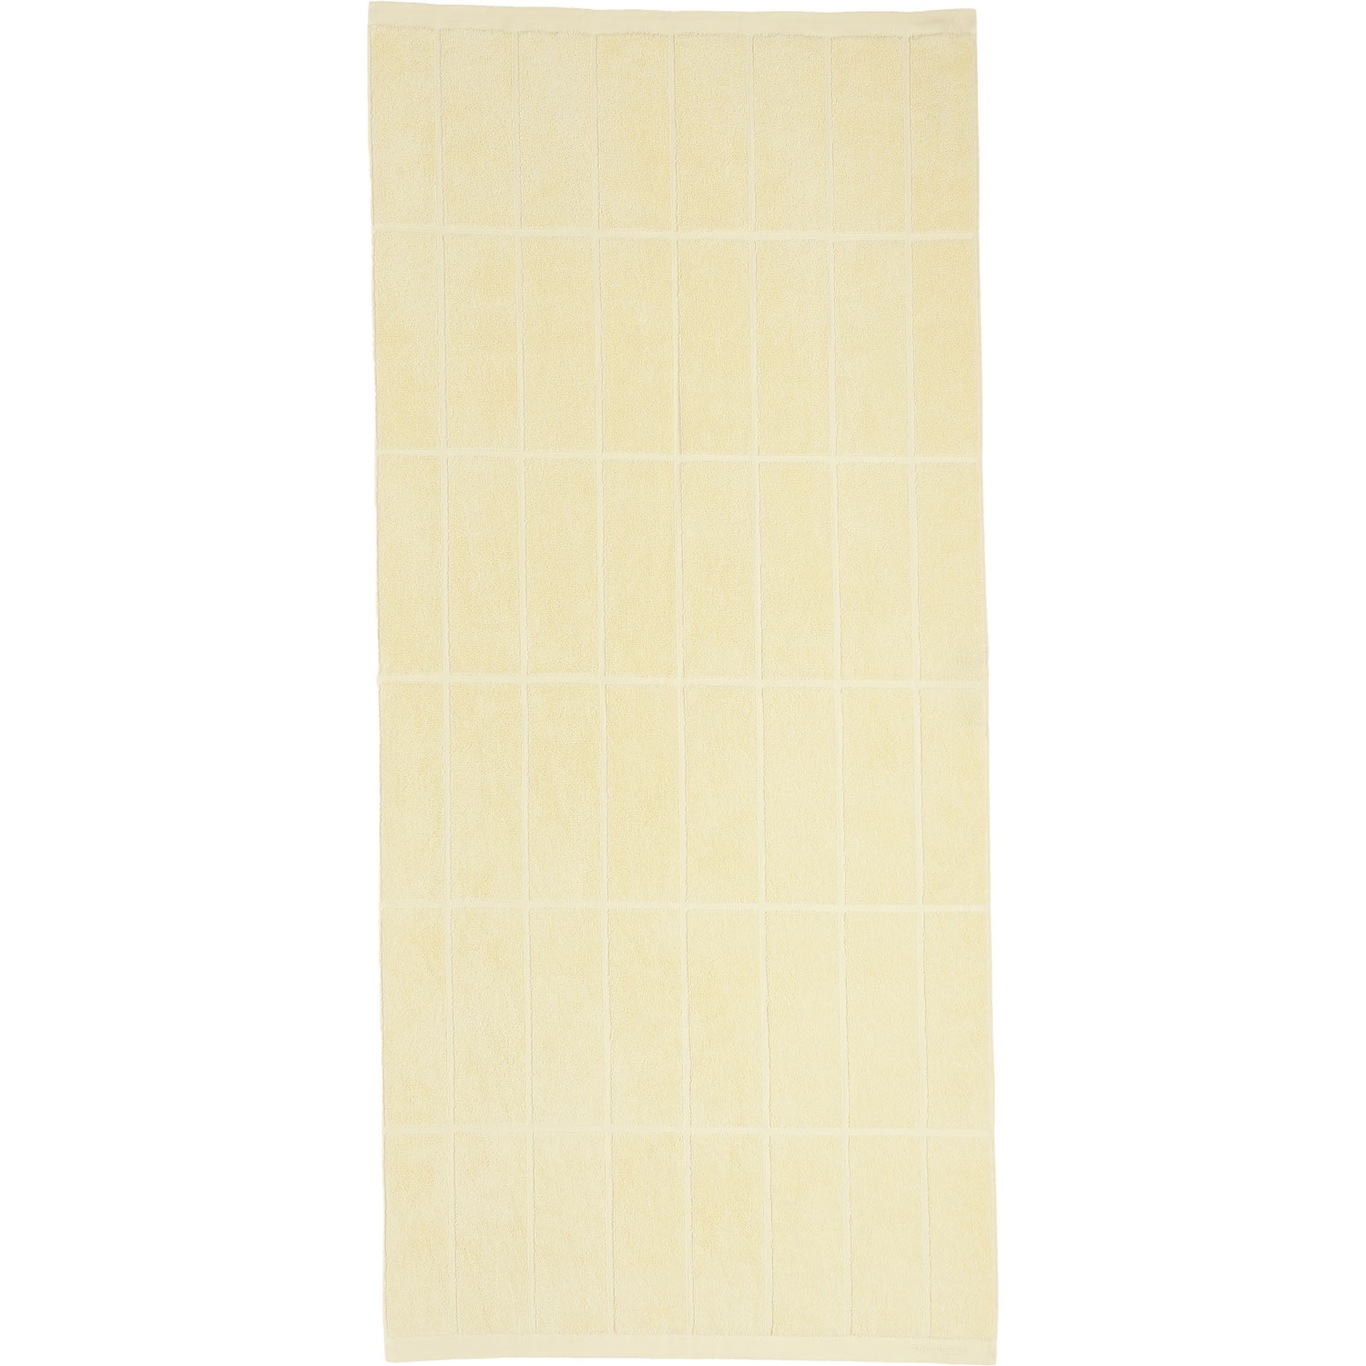 Tiiliskivi Handtuch 70x150 cm, Butter Yellow